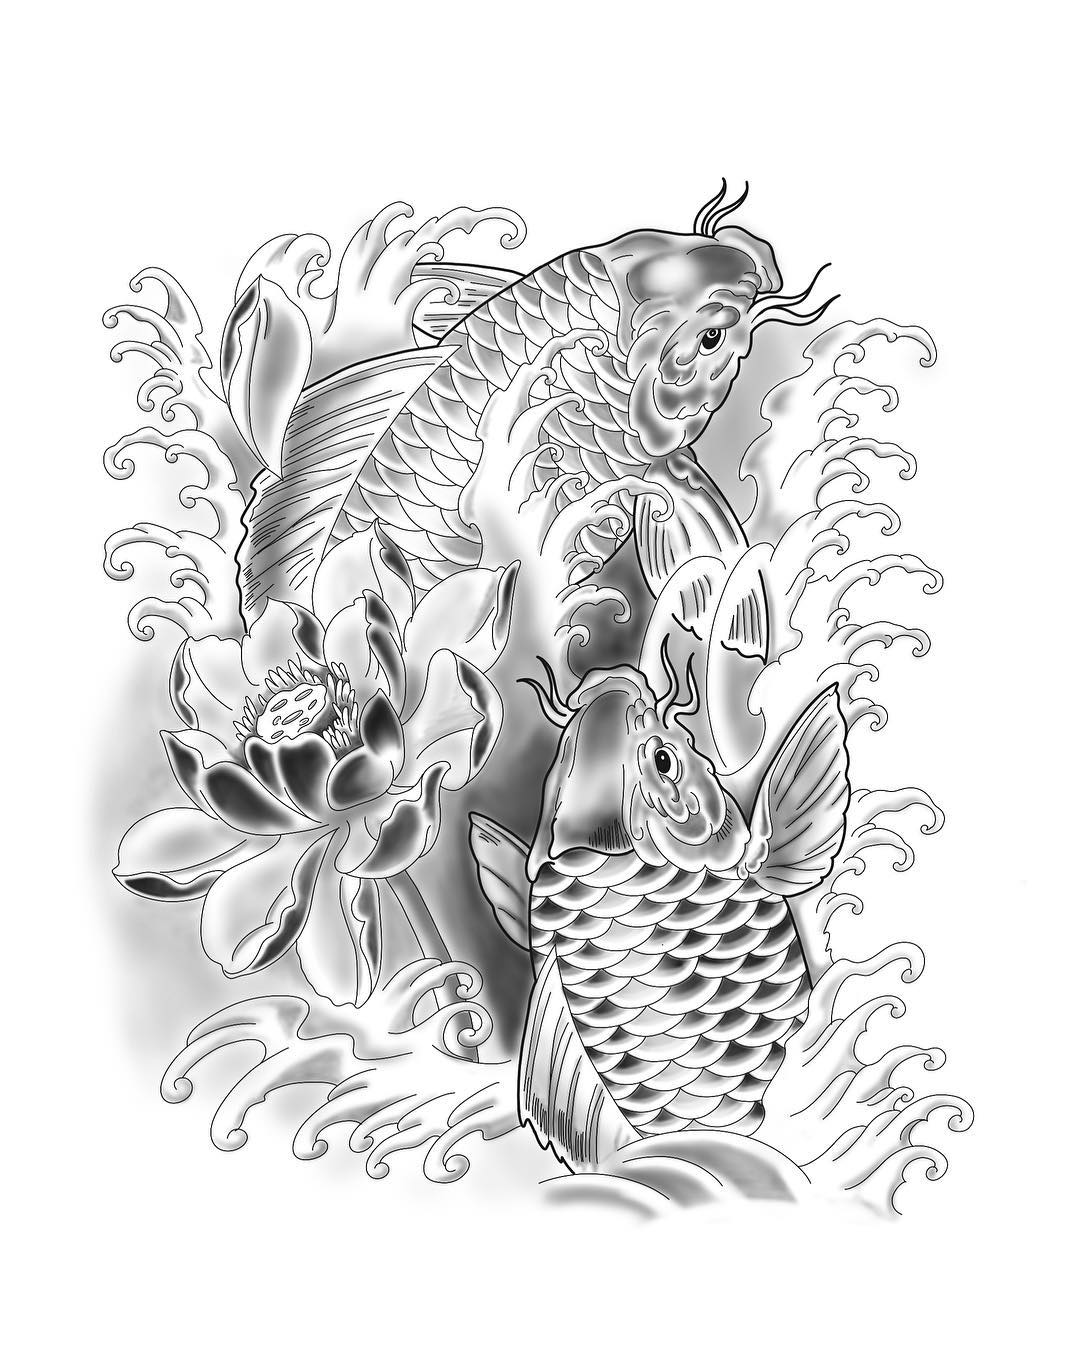 鲤鱼荷花纹身手稿